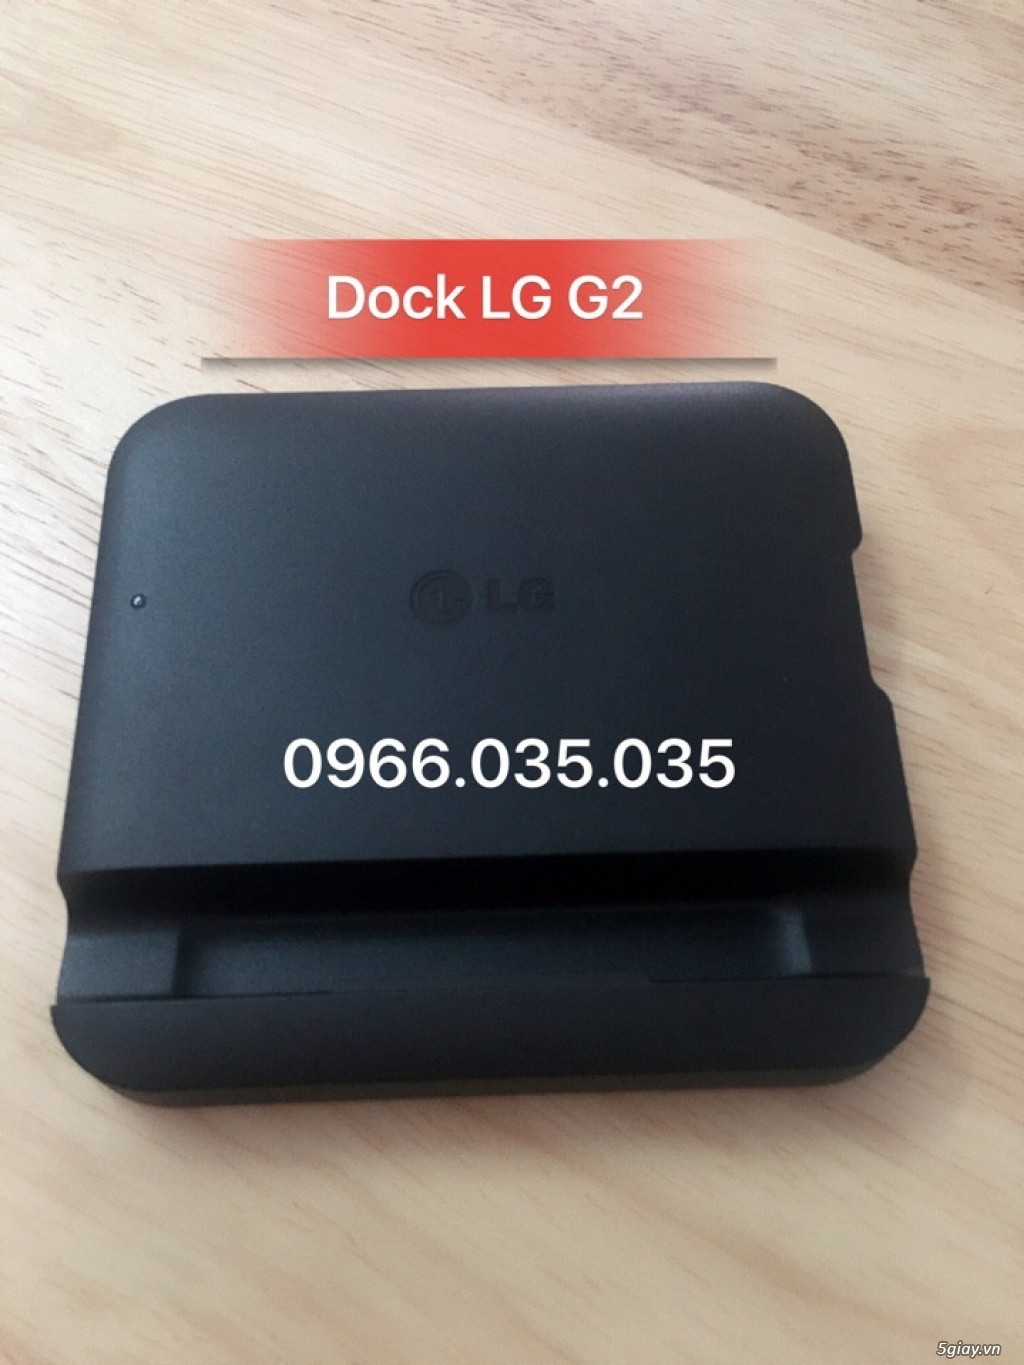 [Pin+Dock LG] G2,Gpro,Gpro 2,G3,G4,G5 Zin máy &[Pin Samsung] Note3,Note4,Note edge,S4,S5 Chính Hãng - 16